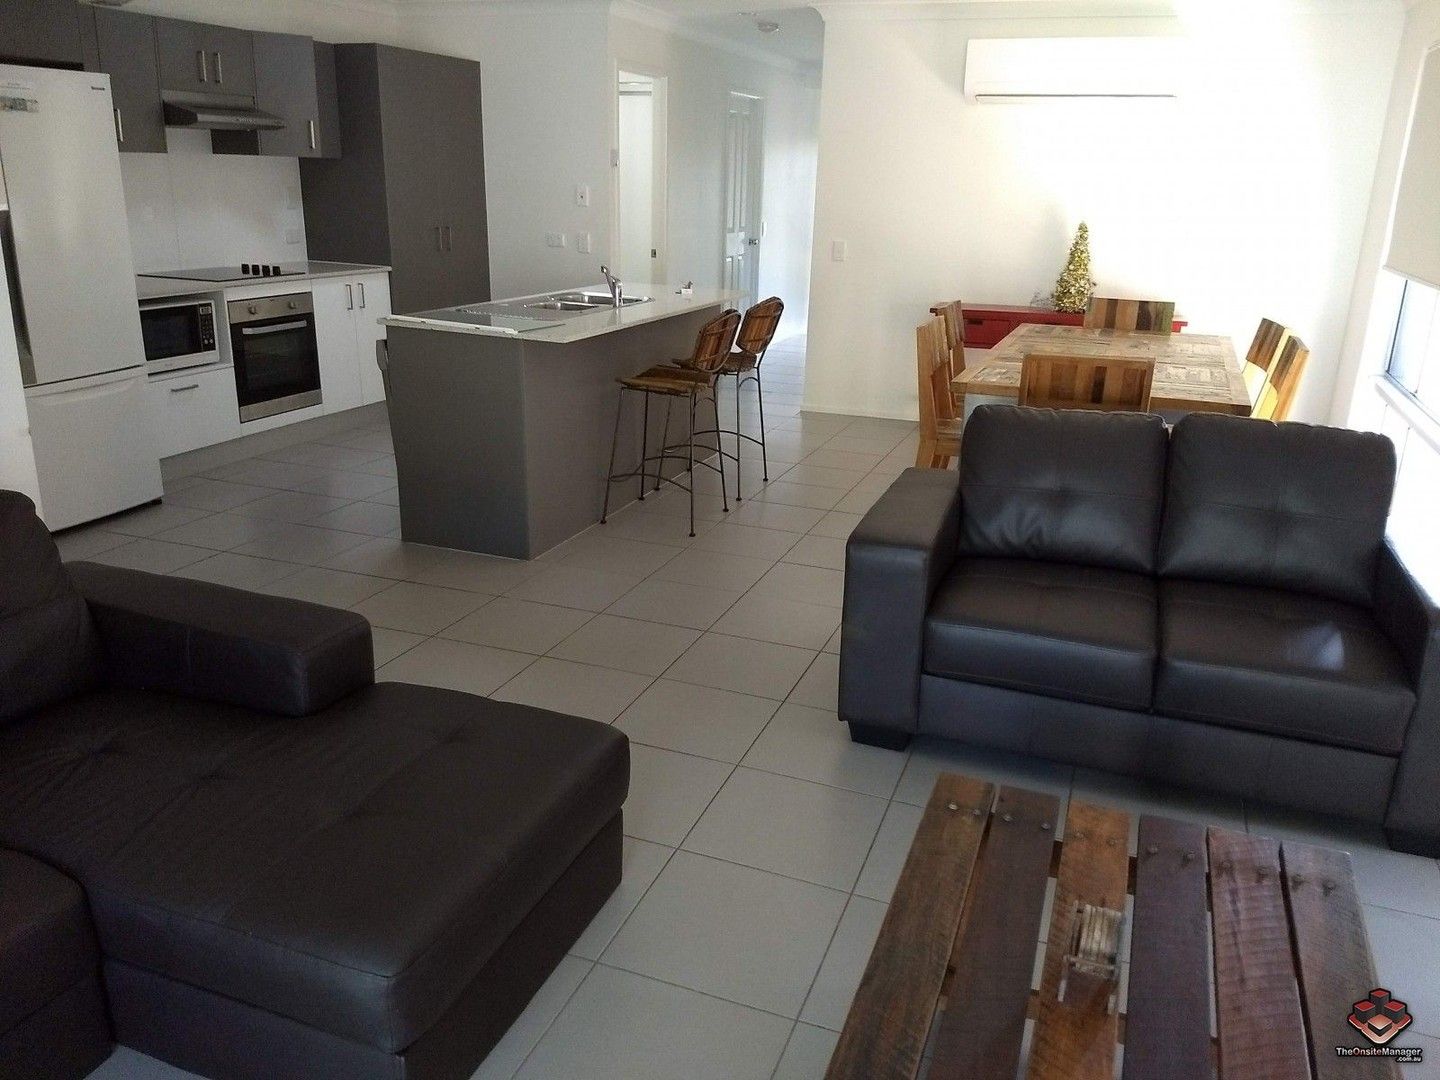 3 bedrooms Apartment / Unit / Flat in ID:21124293/230 Pulgul Street URANGAN QLD, 4655